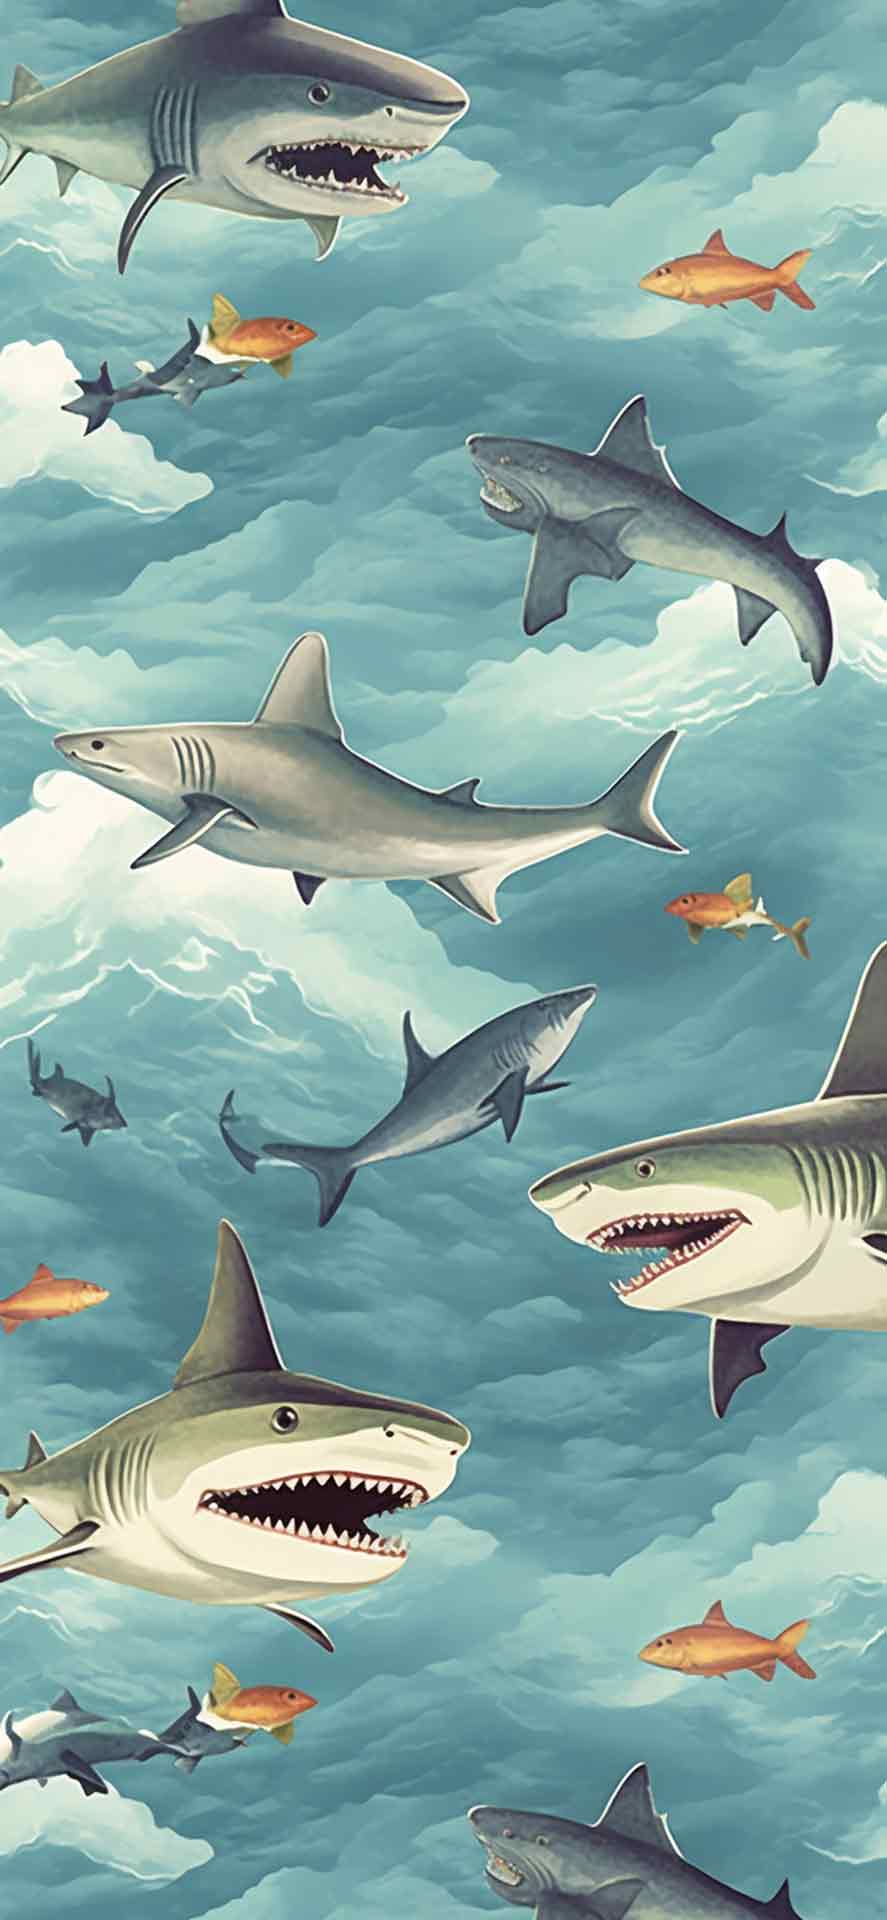 天空壁纸中的鲨鱼图案